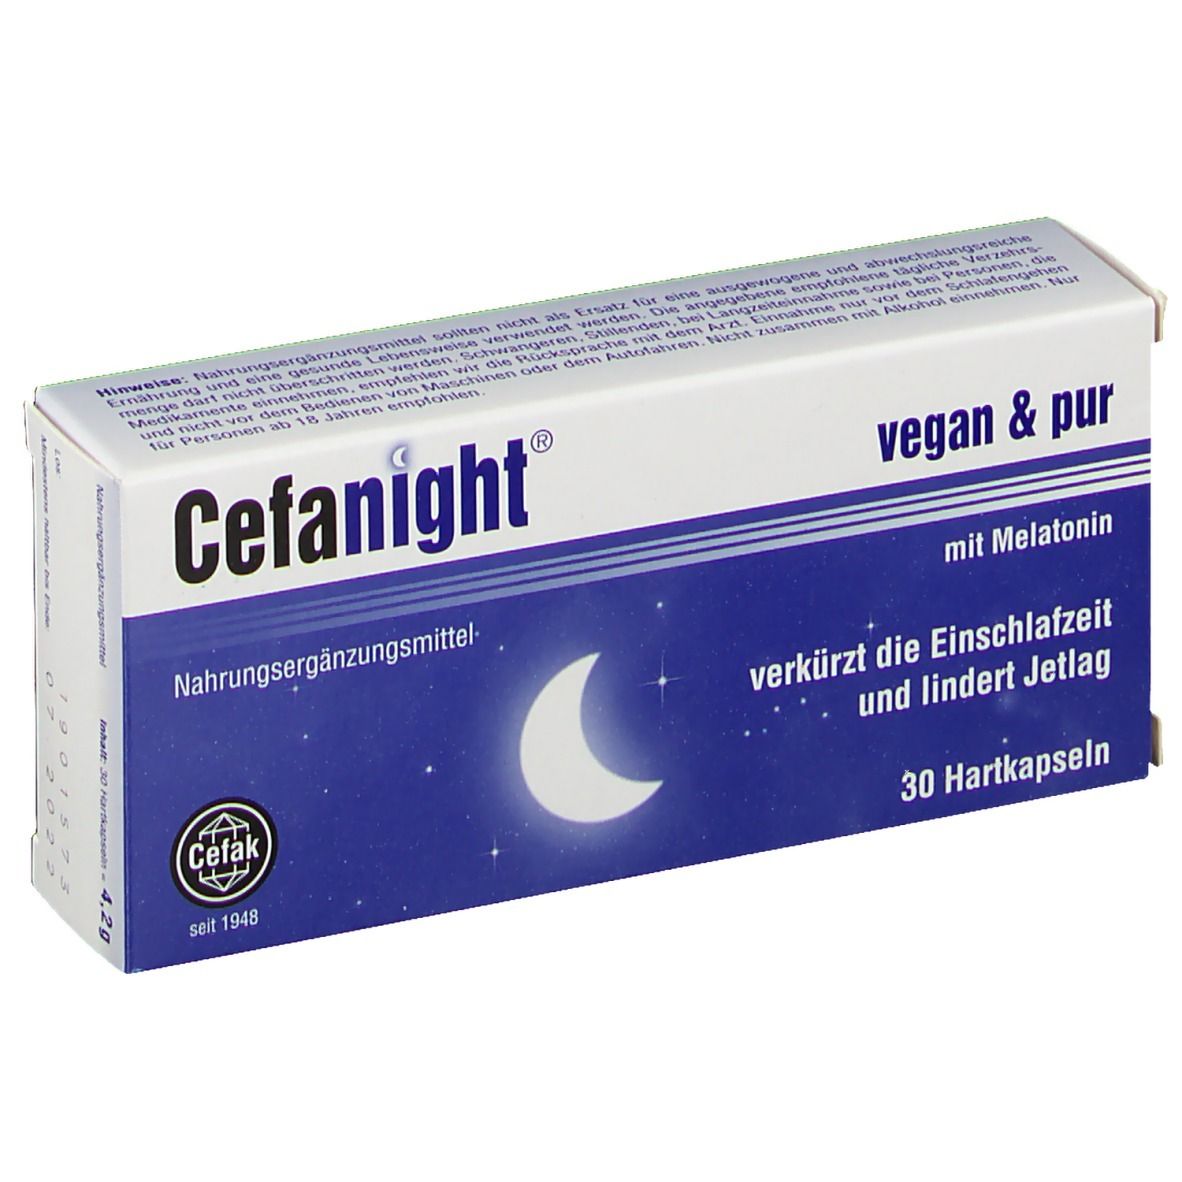 Cefanight® vegan & pur